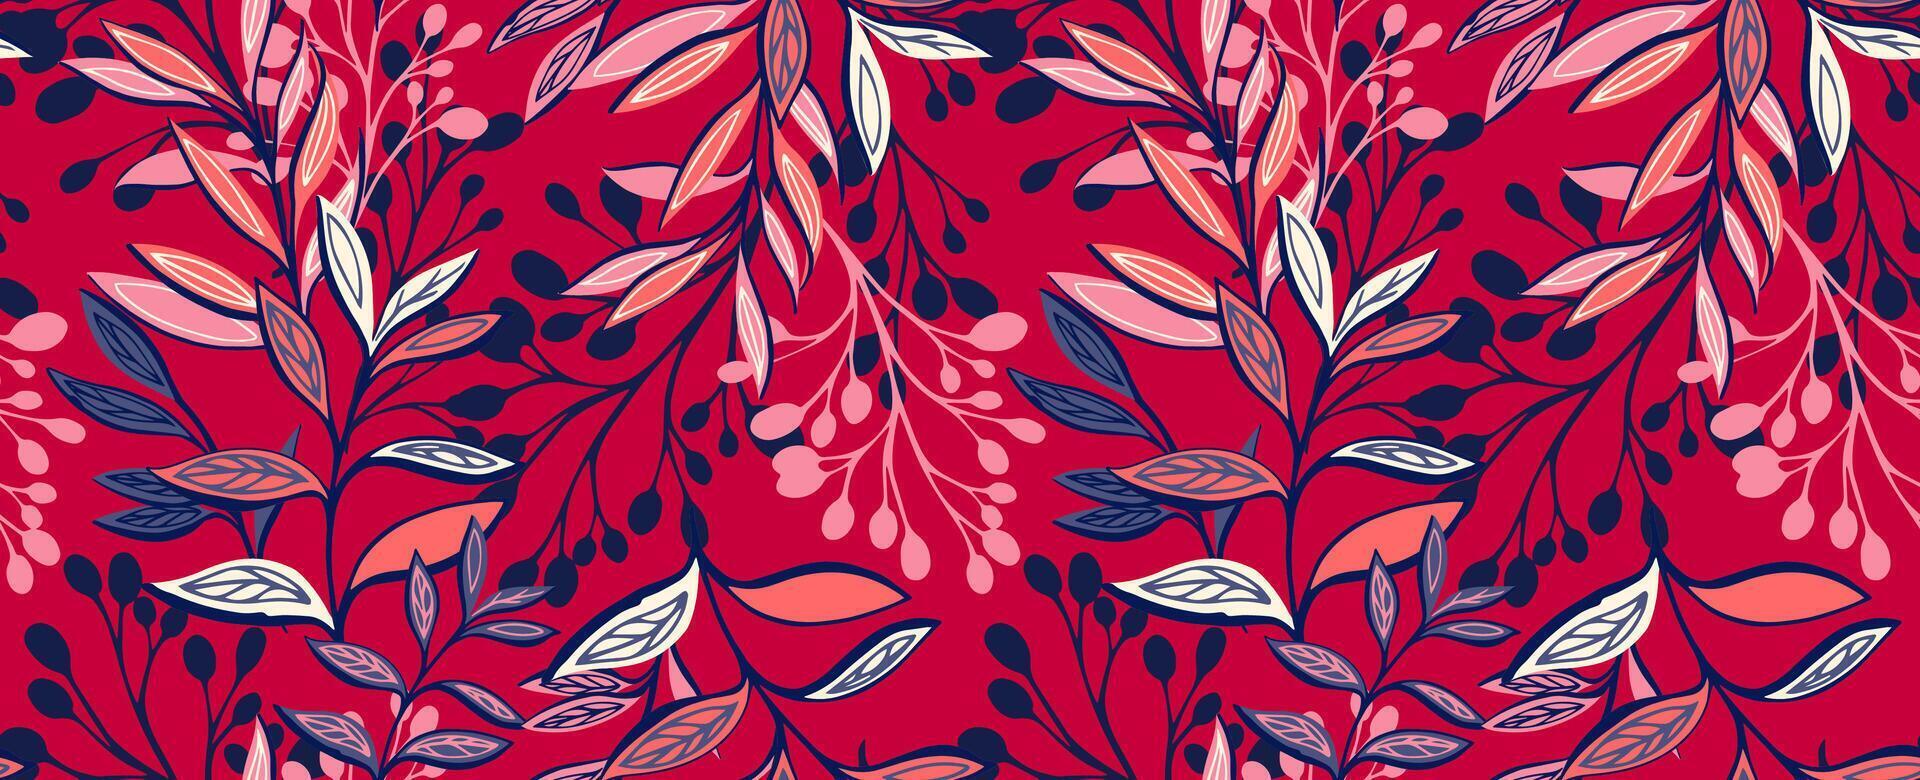 nahtlos Muster mit abstrakt, modern Geäst Blätter Stiele. kreativ tropisch Blumen- Hintergrund auf ein rot Hintergrund. Vektor Hand gezeichnet Illustration. Vorlage zum Design, Textil, Drucken, Mode